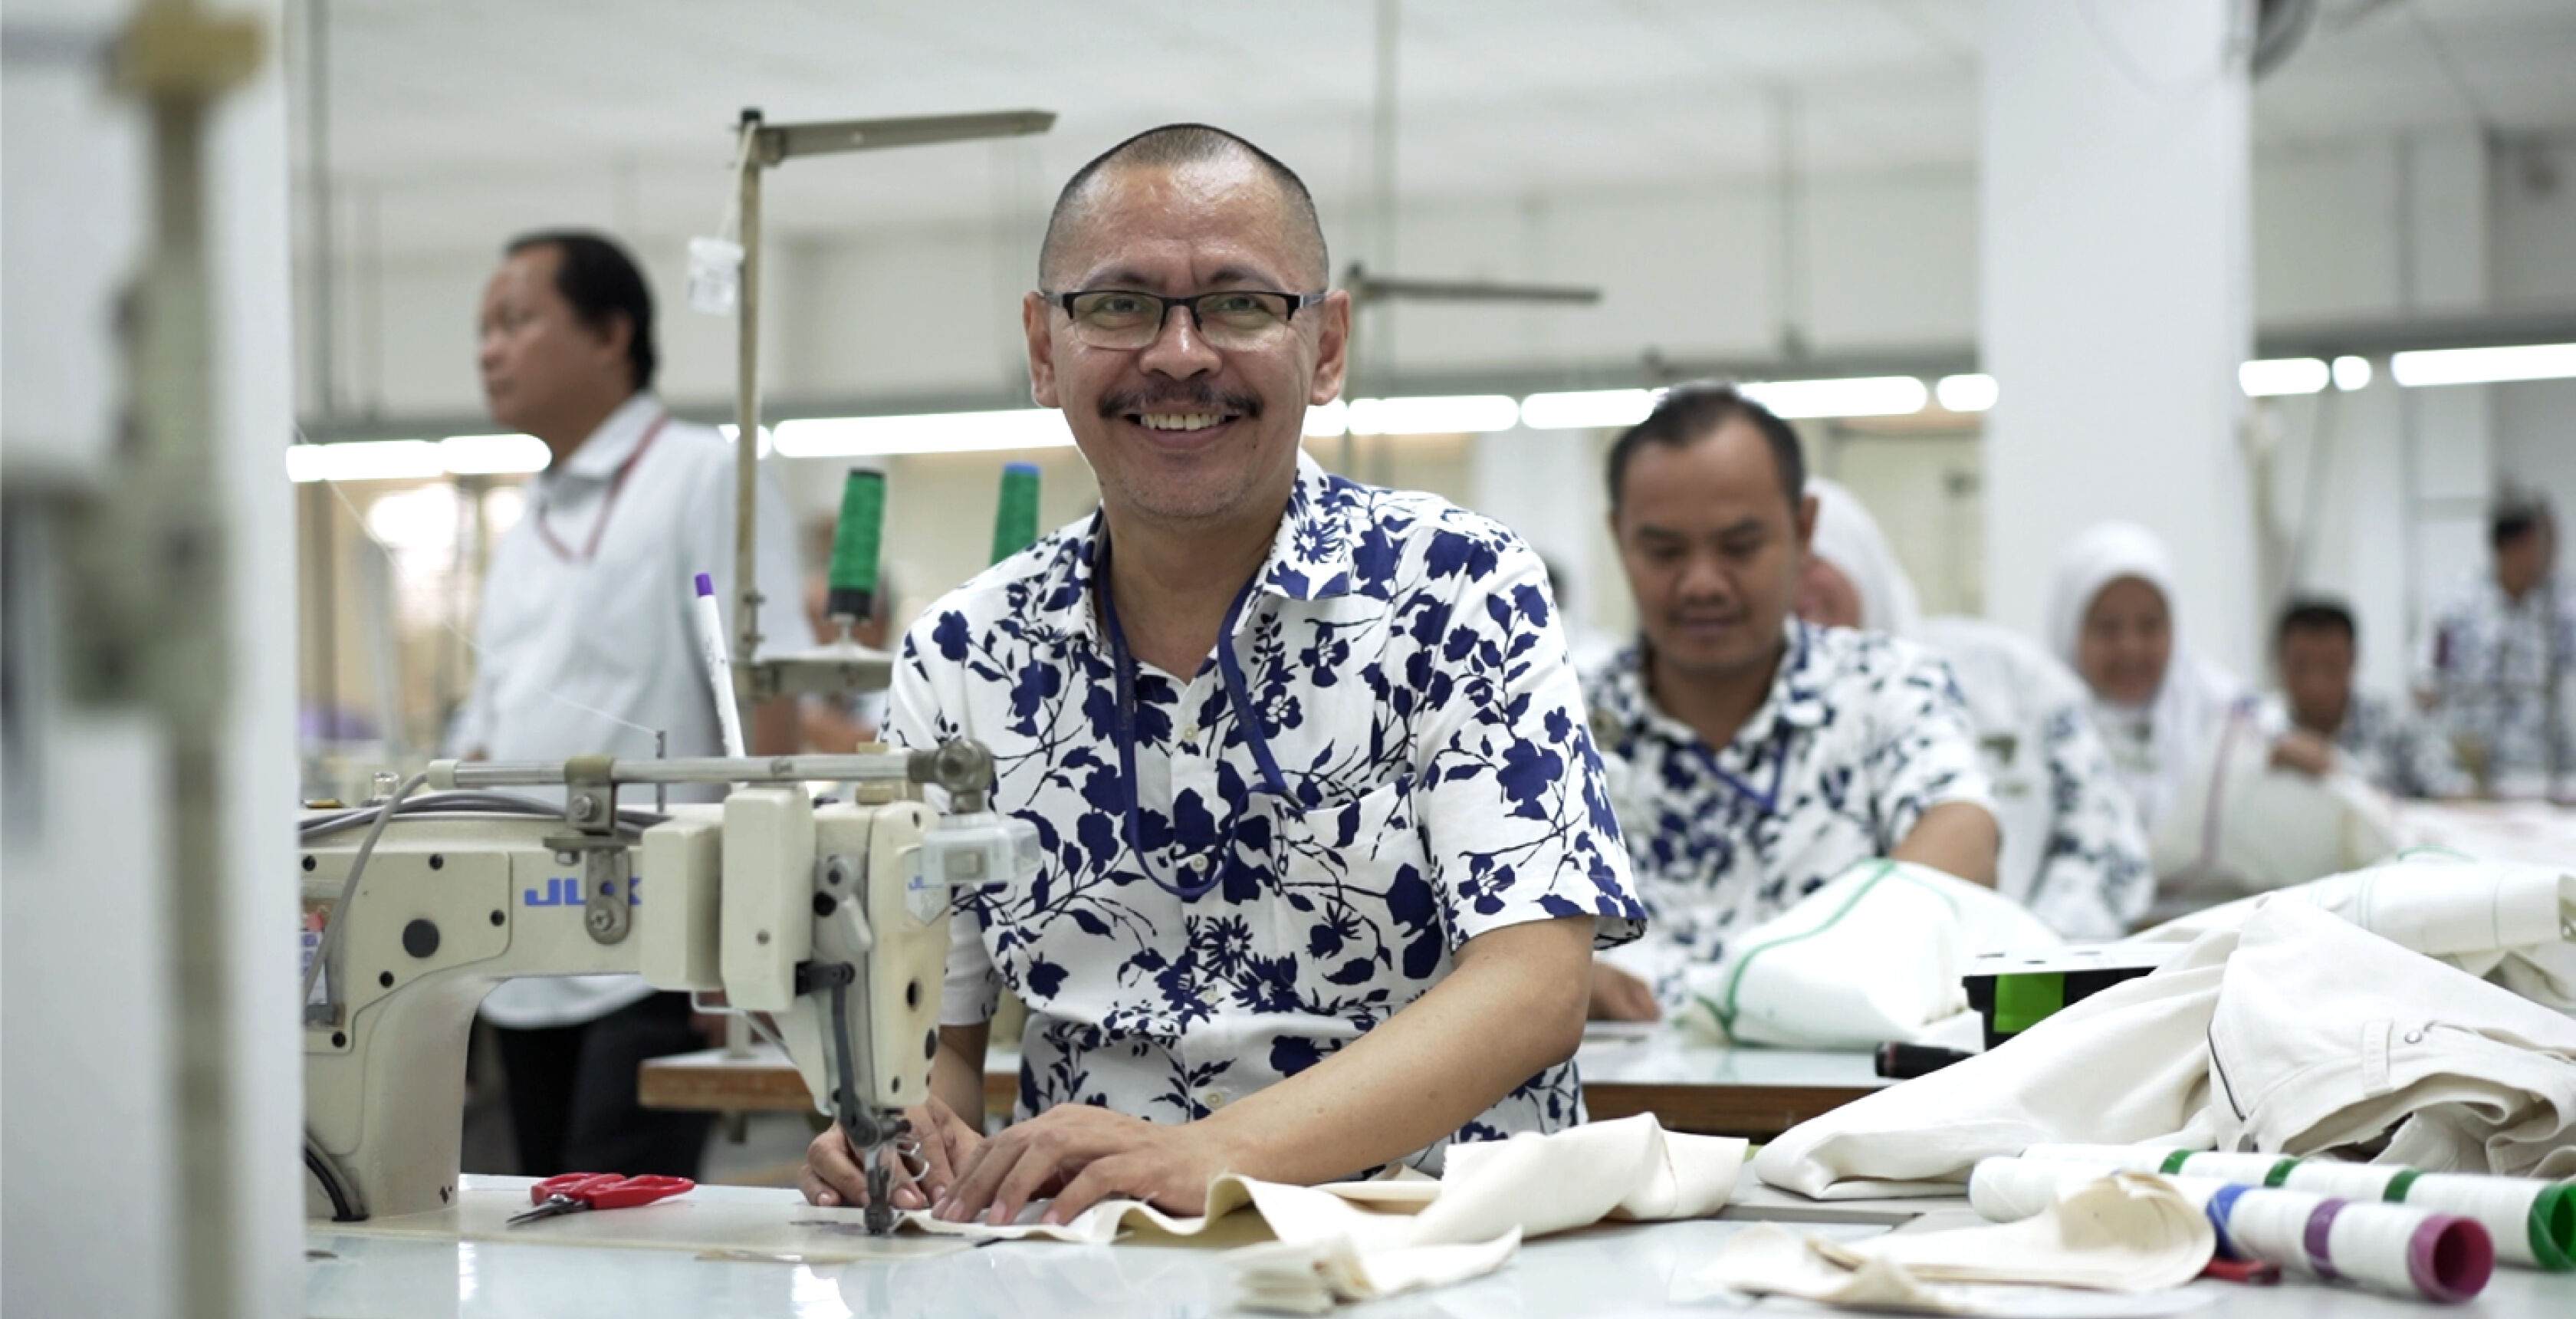 Man sewing at a garment factory.